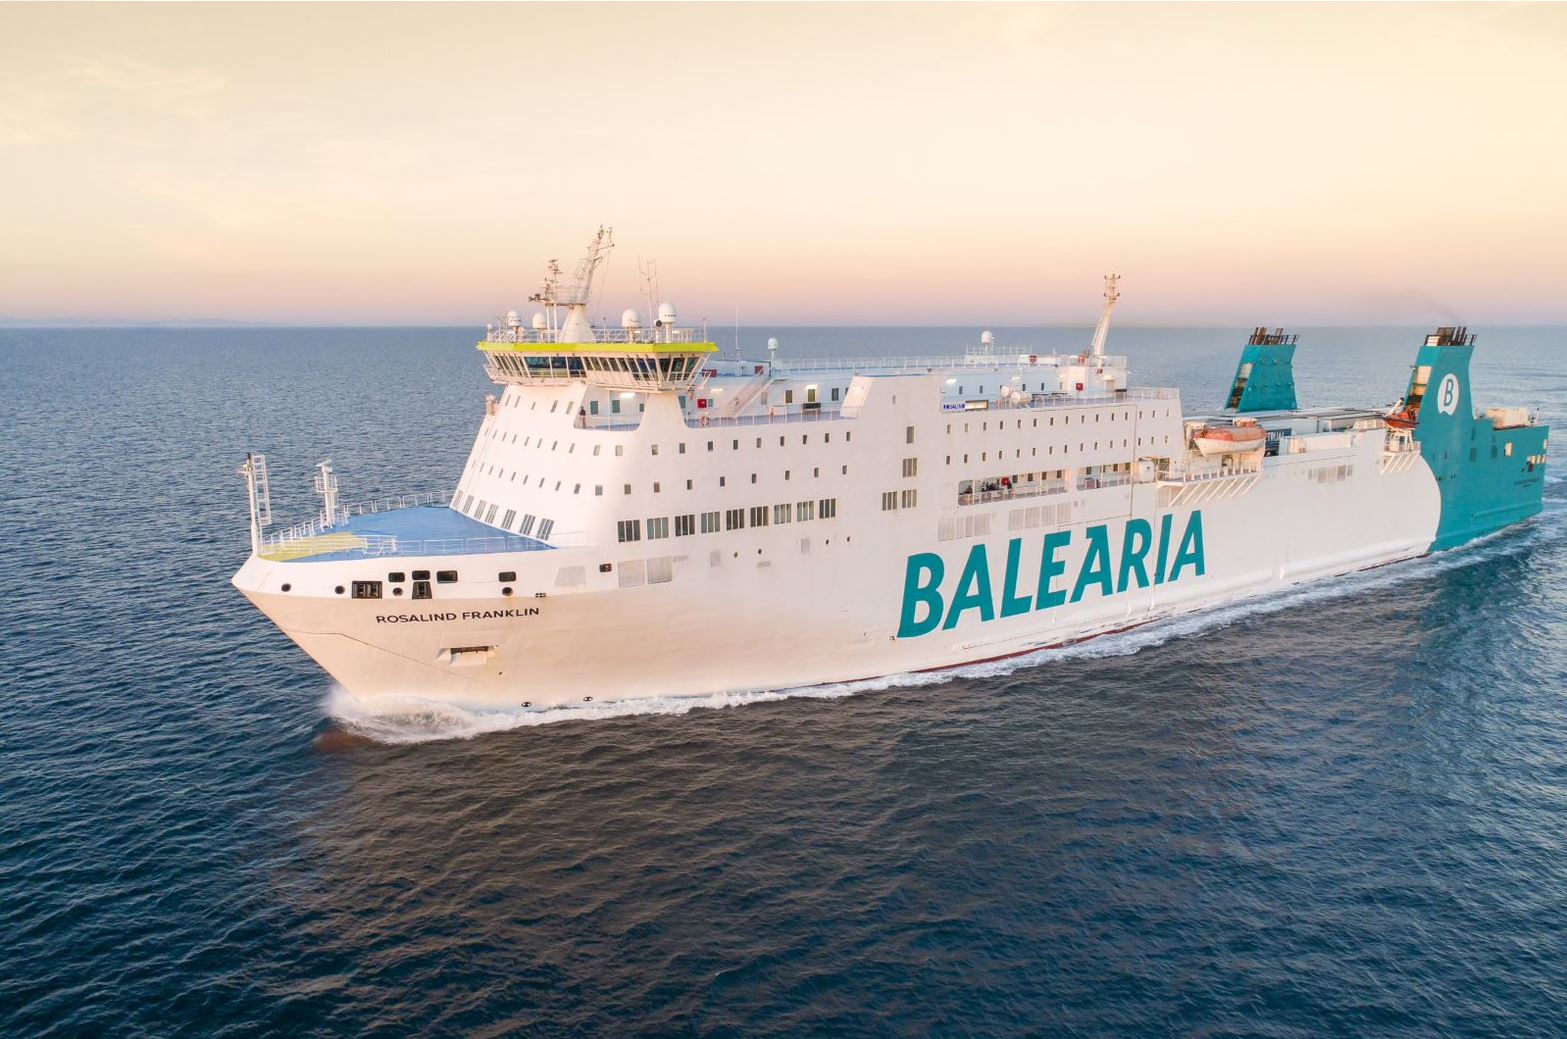 Finnlines annuncia che il Rosalind Franklin tornerà a navigare nel Mar Baltico con il nome di Finnclipper